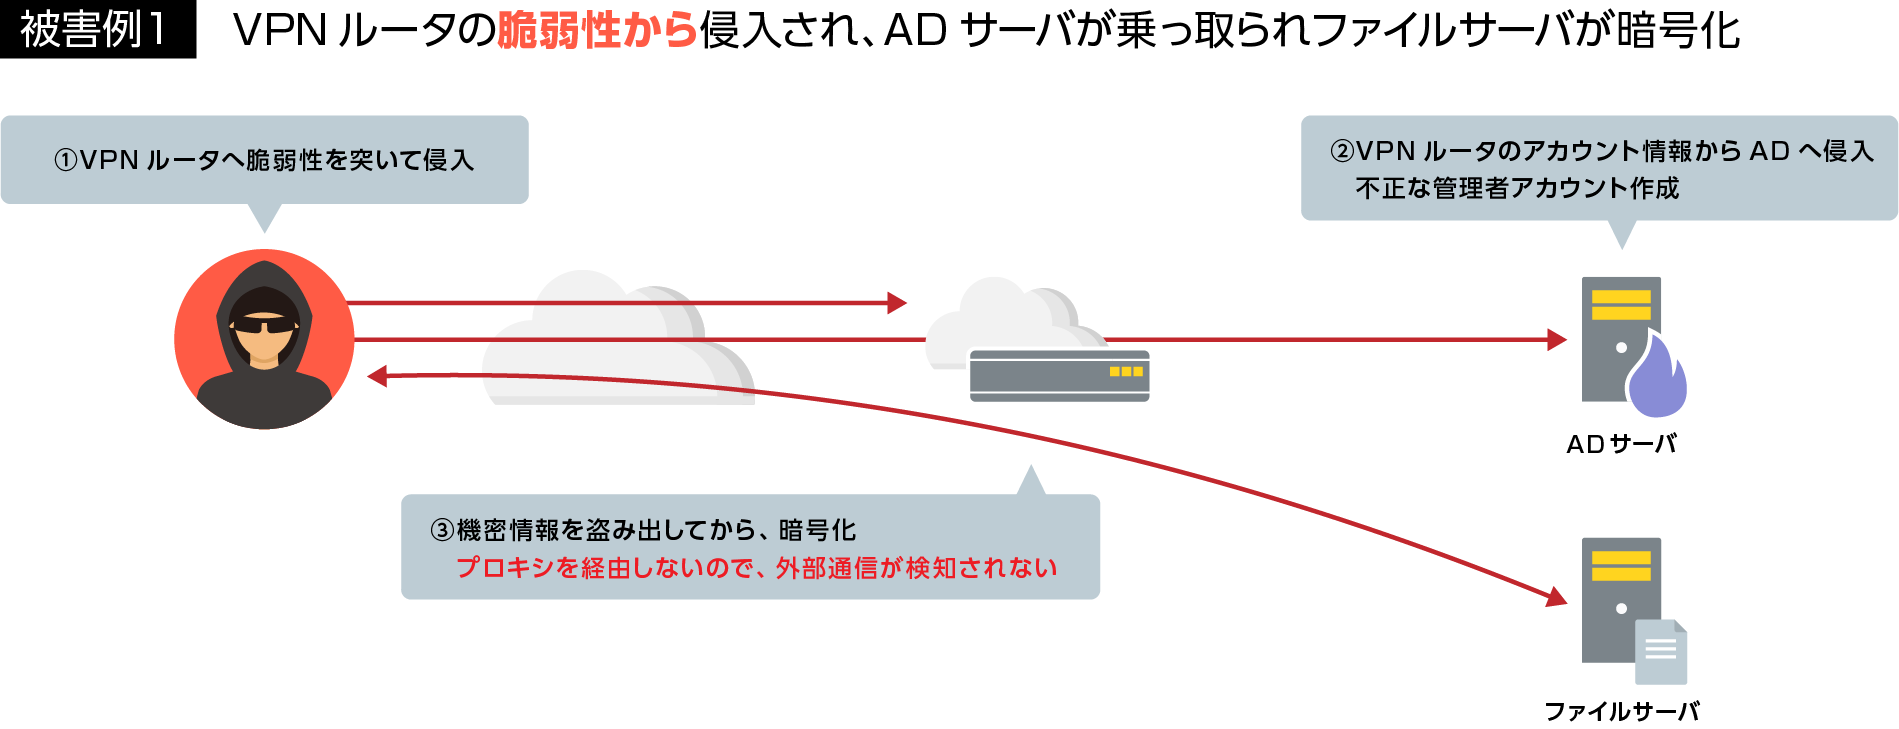 被害例1：VPNルータの脆弱性から侵入され、ADサーバが乗っ取られファイルサーバが暗号化